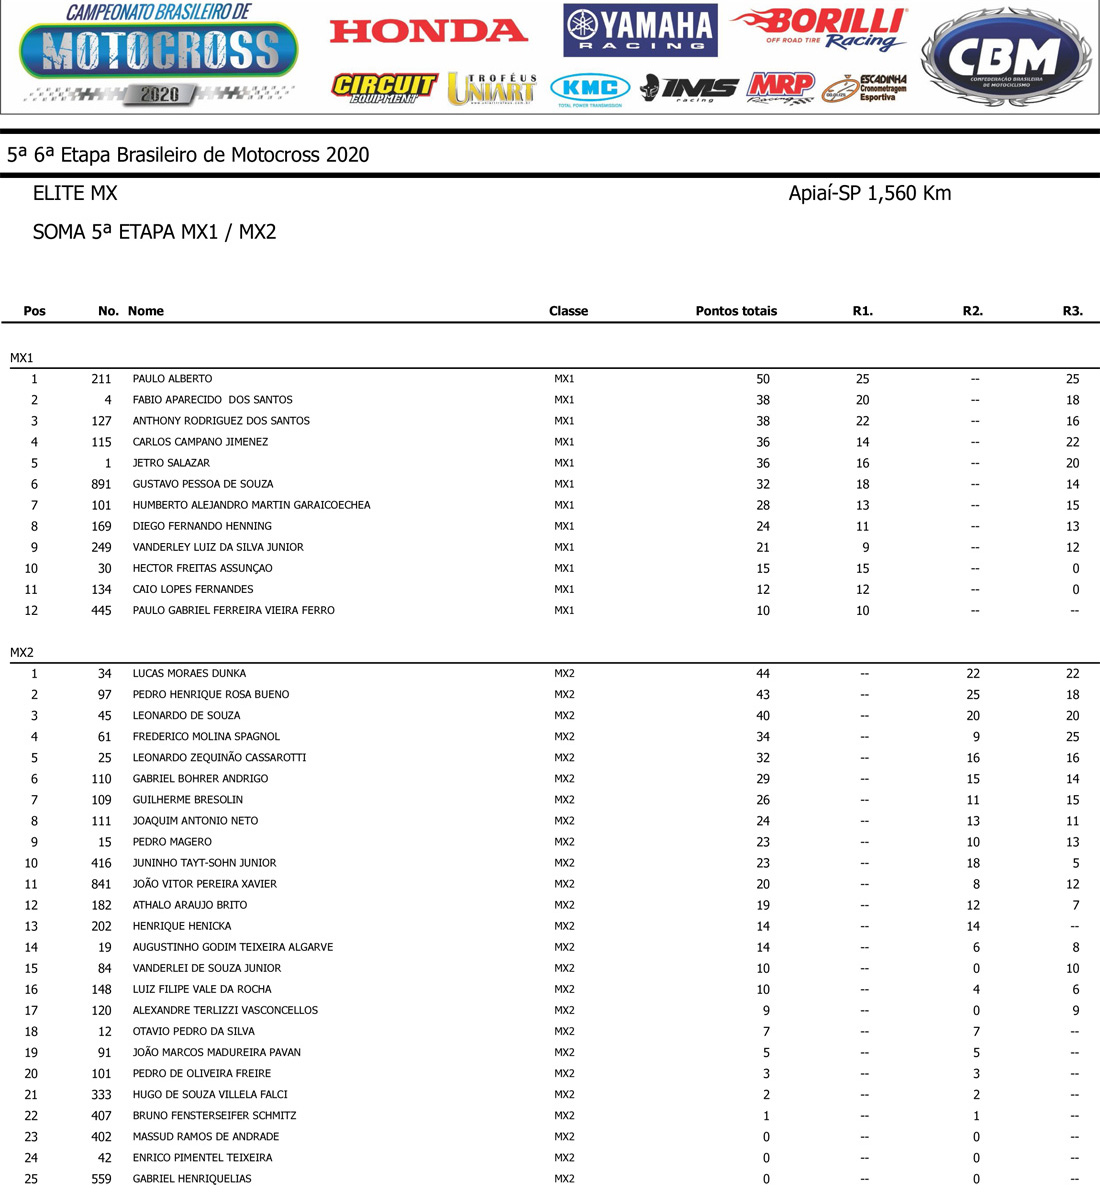 Resultado soma das baterias das categorias MX1 e MX2 - Final do Campeonato Brasileiro de Motocross